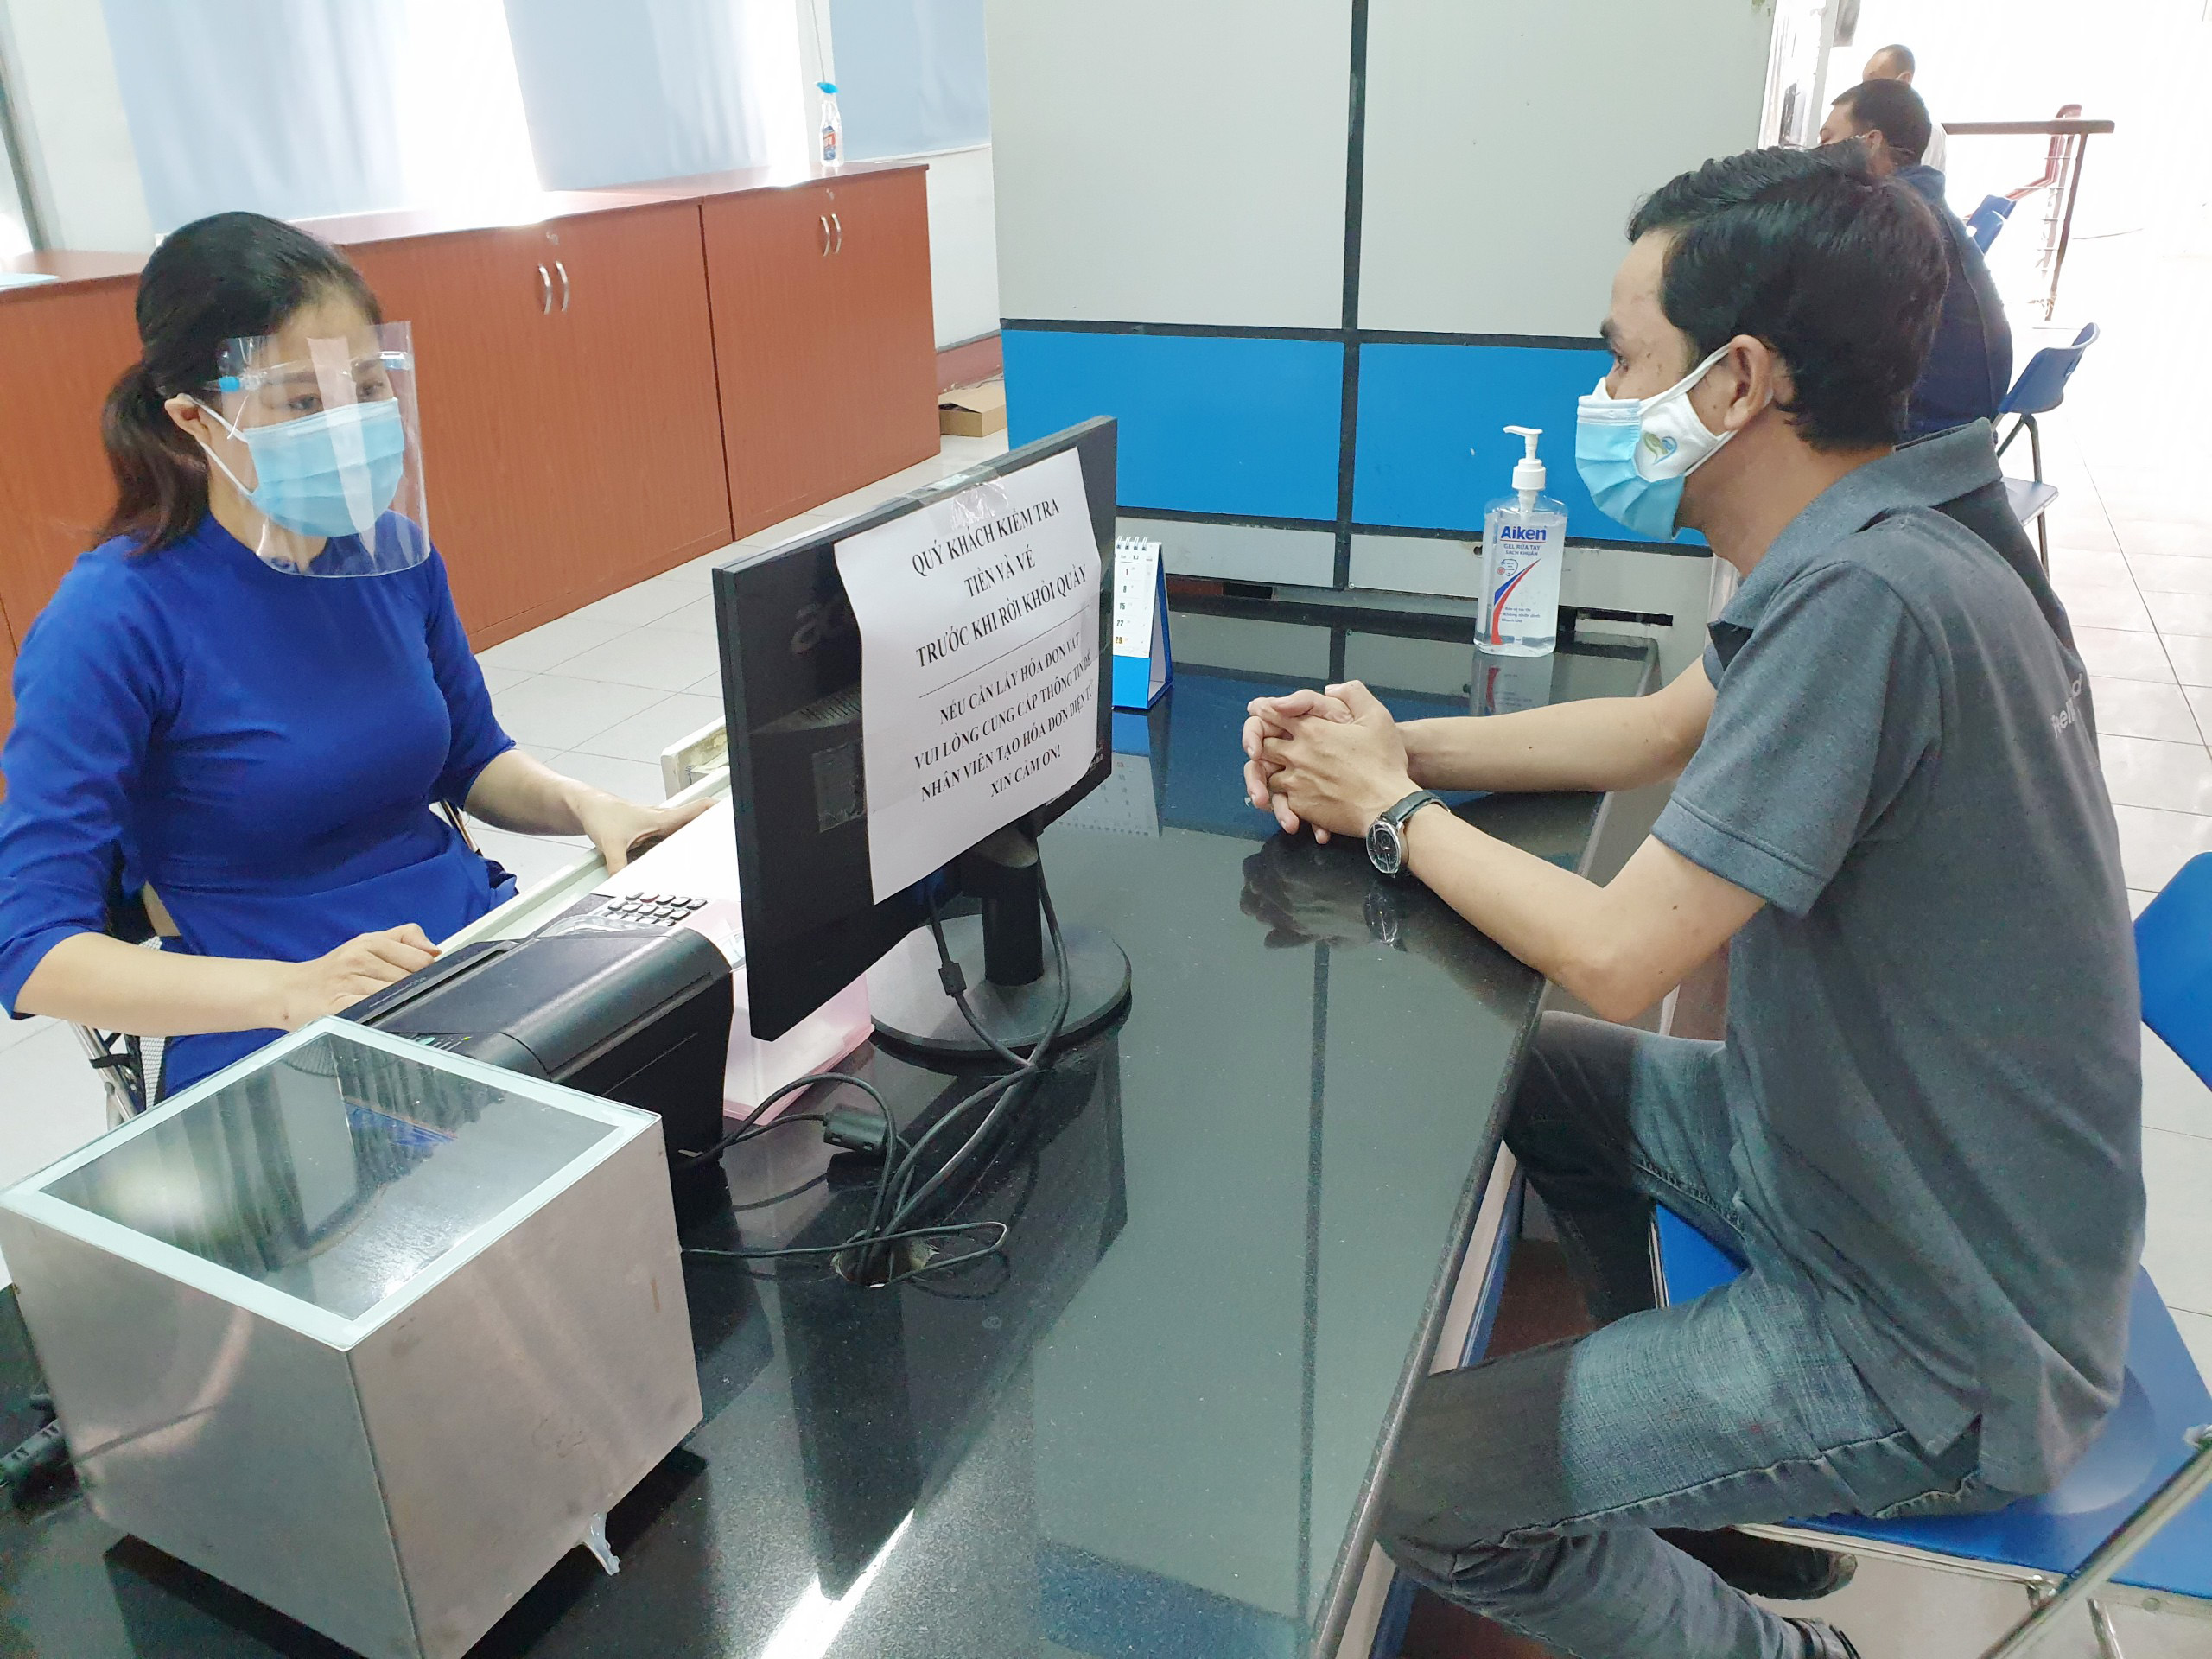 Sáng 15/11, ga Sài Gòn (quận 3, TP.HCM) mở bán vé tàu Tết Nguyên đán 2022 cho hành khách cá nhân mua và thanh toán trực tiếp tại quầy.&nbsp;